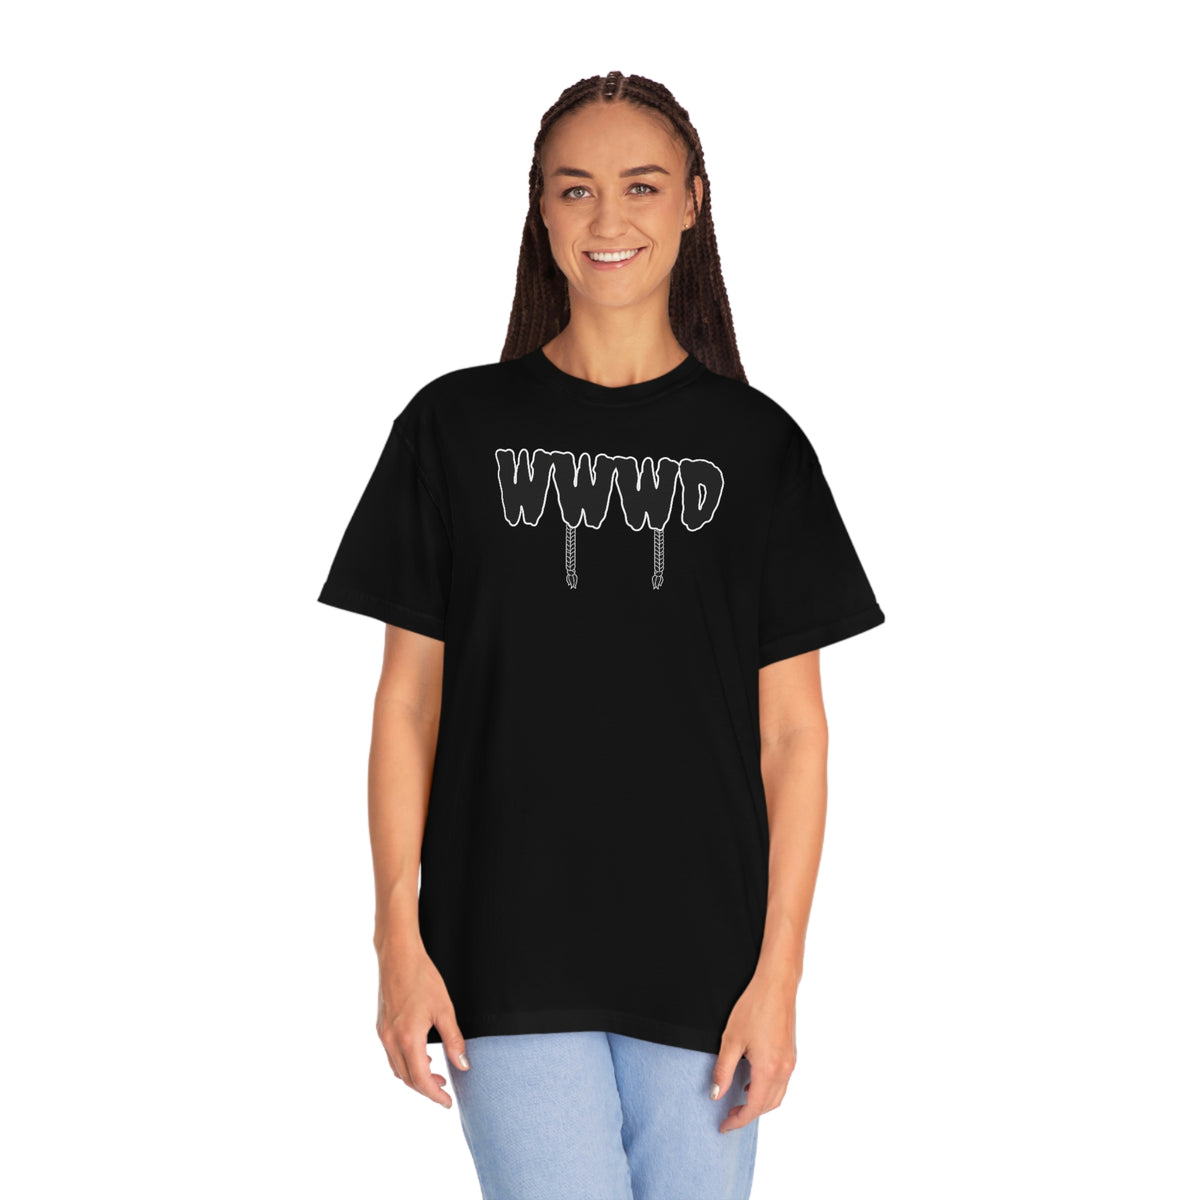 Wednesday Addams, WWWD, What Would Wednesday Do, Addams Family tshirt, Wednesday Addams shirt